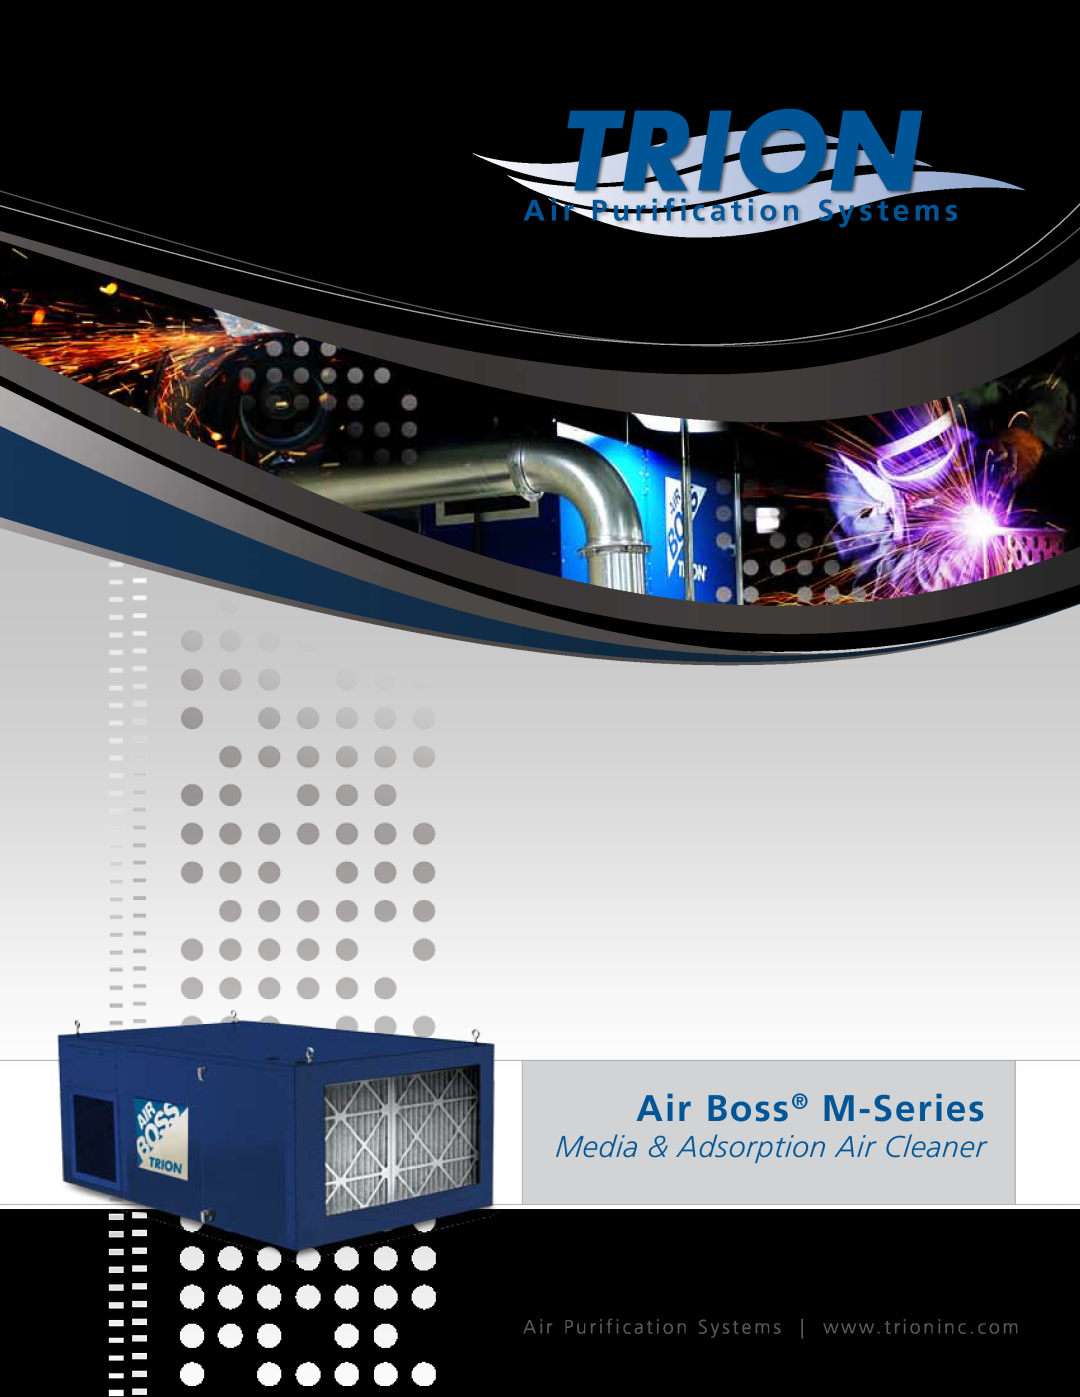 Trion manual A i r P u r i f i c a t i o n S y s t e m s, Air Boss M-Series, Media & Adsorption Air Cleaner 